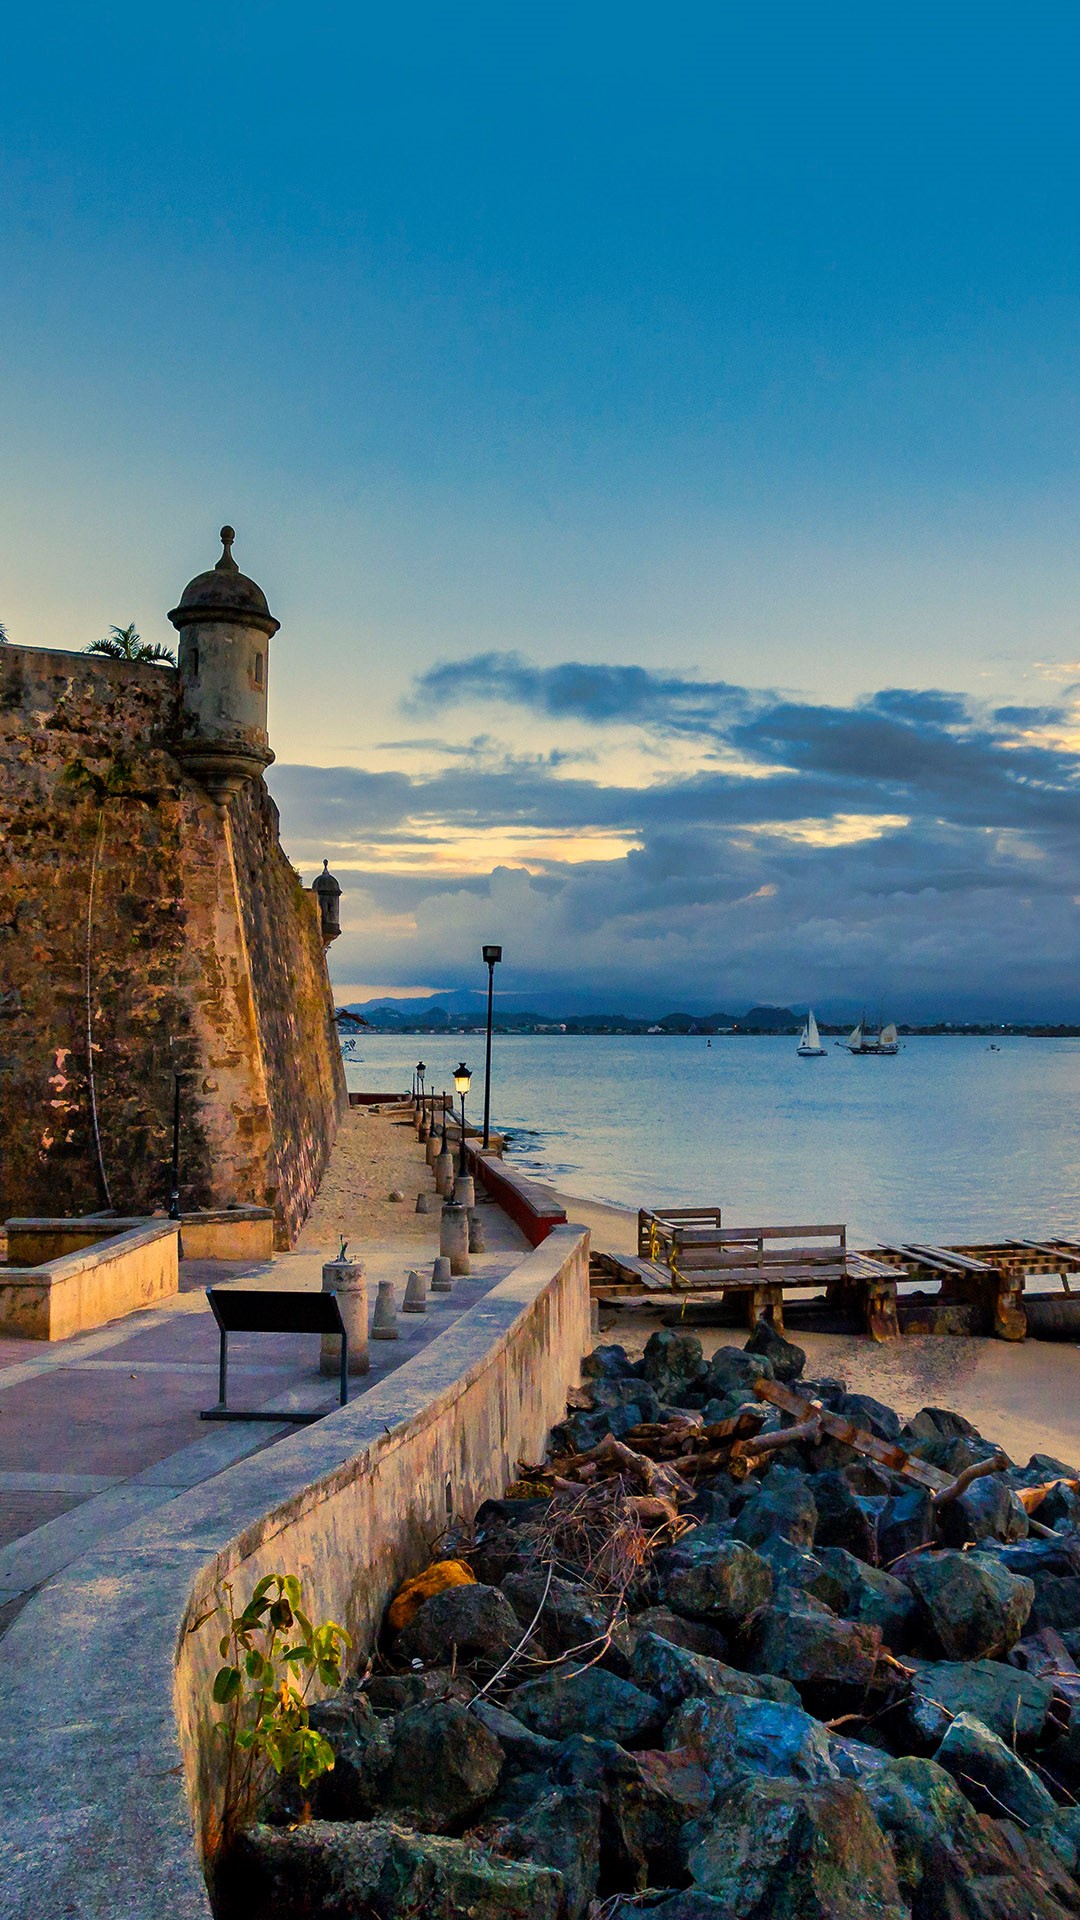 El Morro, Paseo de la Princesa, Old San Juan gate, Puerto Rico. Windows 10 Spotlight Image